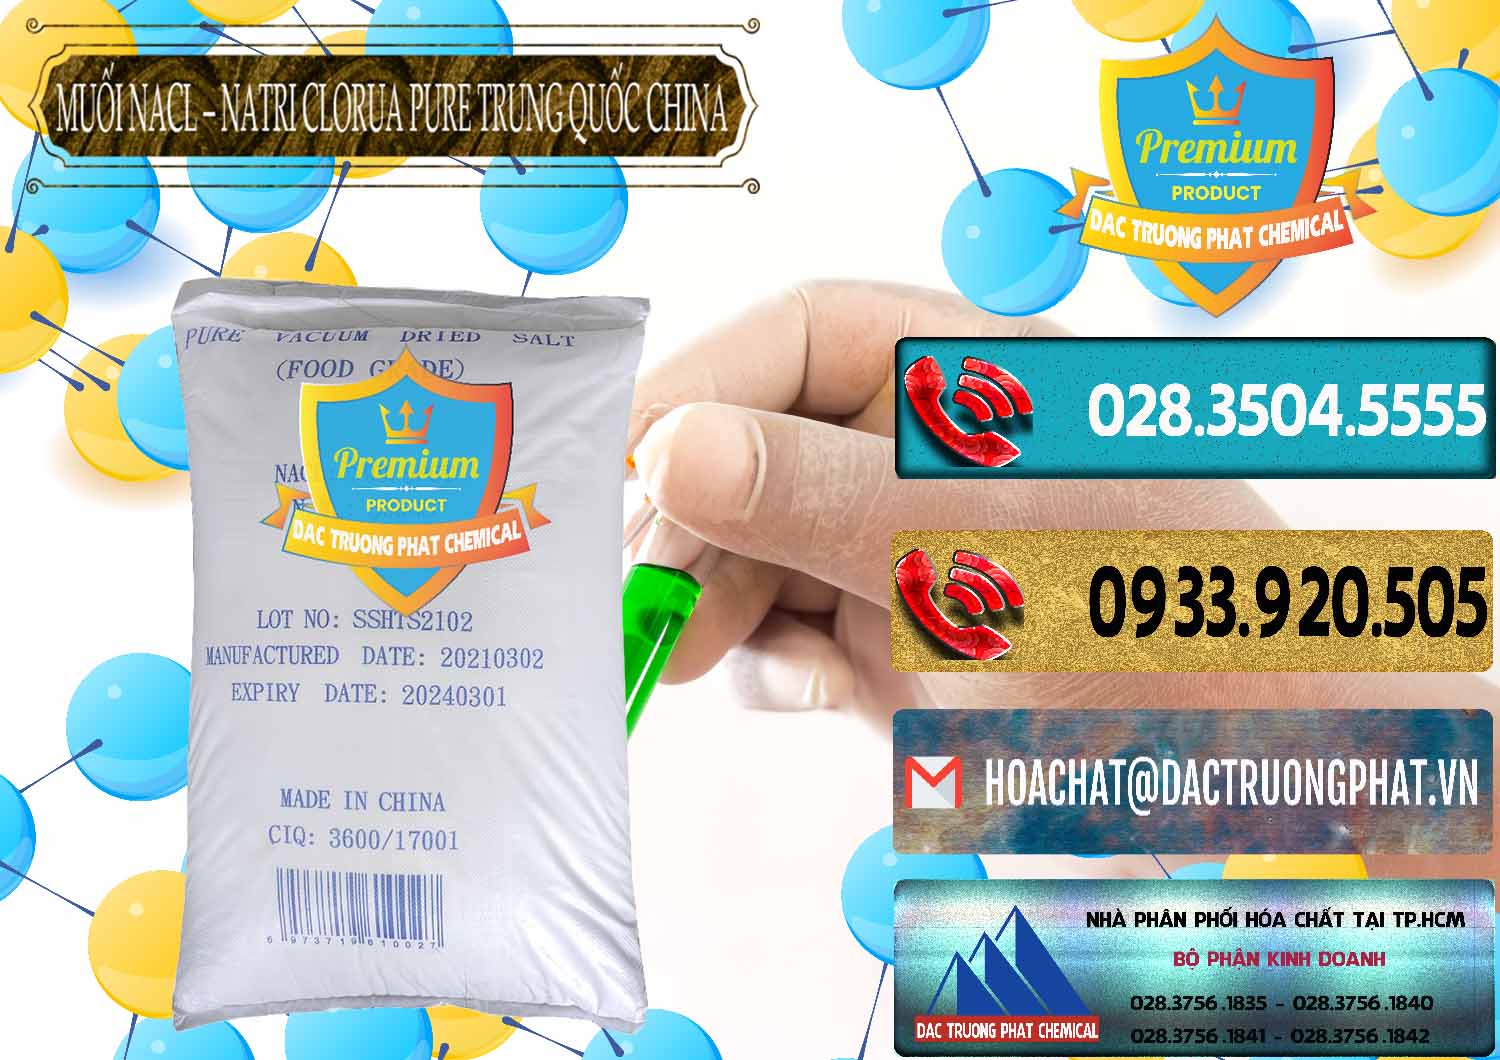 Công ty chuyên bán và cung ứng Muối NaCL – Sodium Chloride Pure Trung Quốc China - 0230 - Nơi chuyên bán _ phân phối hóa chất tại TP.HCM - hoachatdetnhuom.com